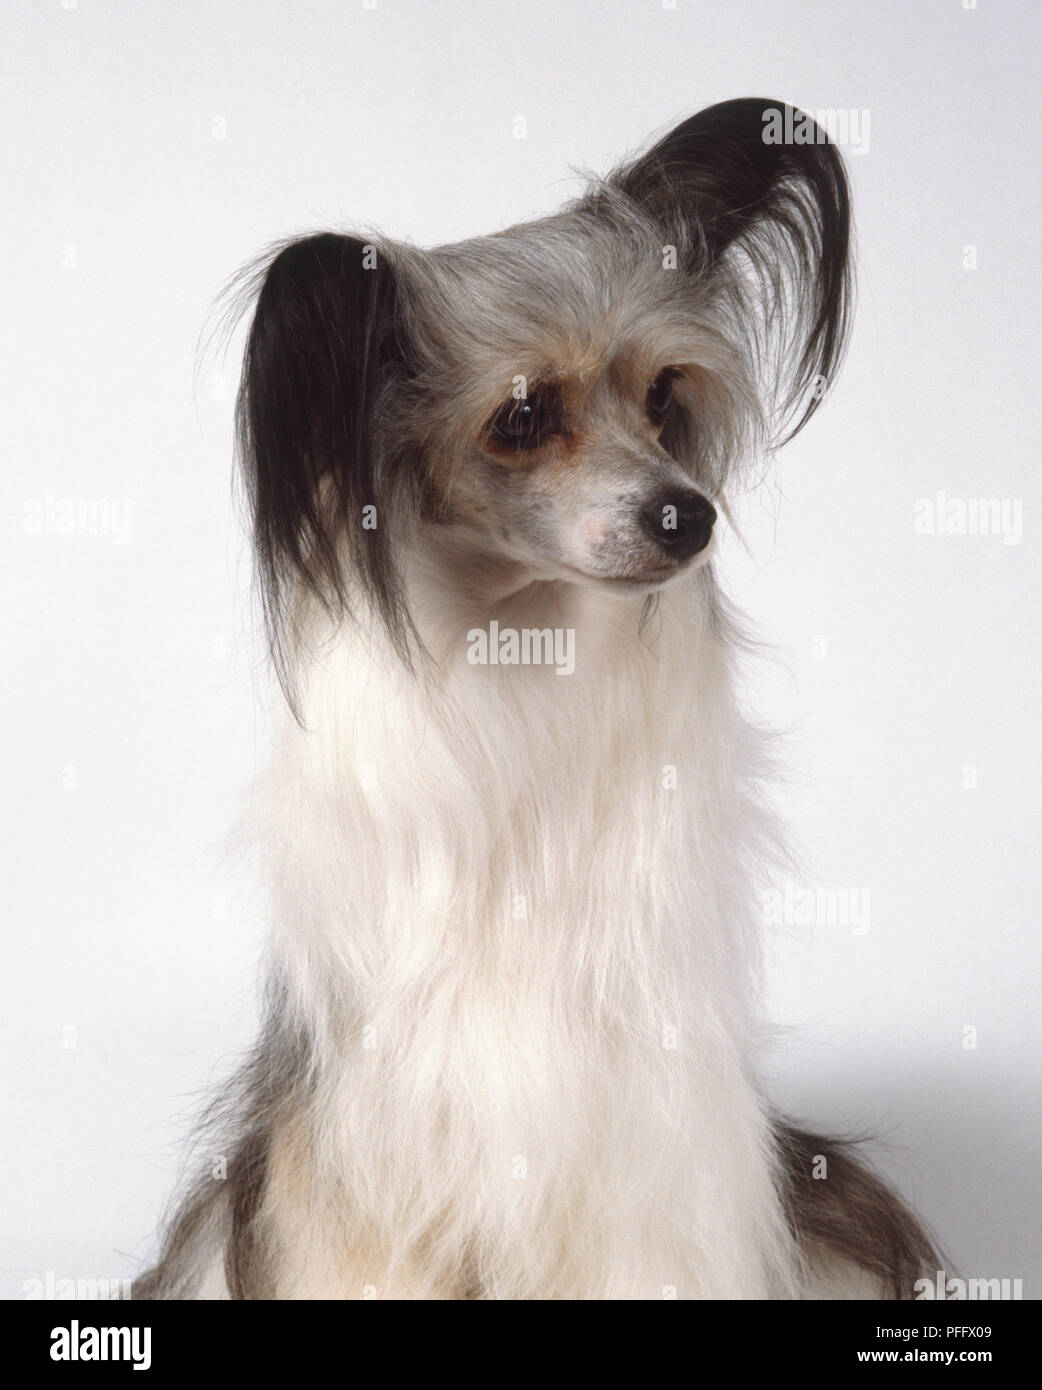 Ein Chinesischer Schopfhund der Pulver - puff Sorte mit seidigen Haaren schwarze Ohren und weiße Brust. Kopf und Hals getroffen. Stockfoto